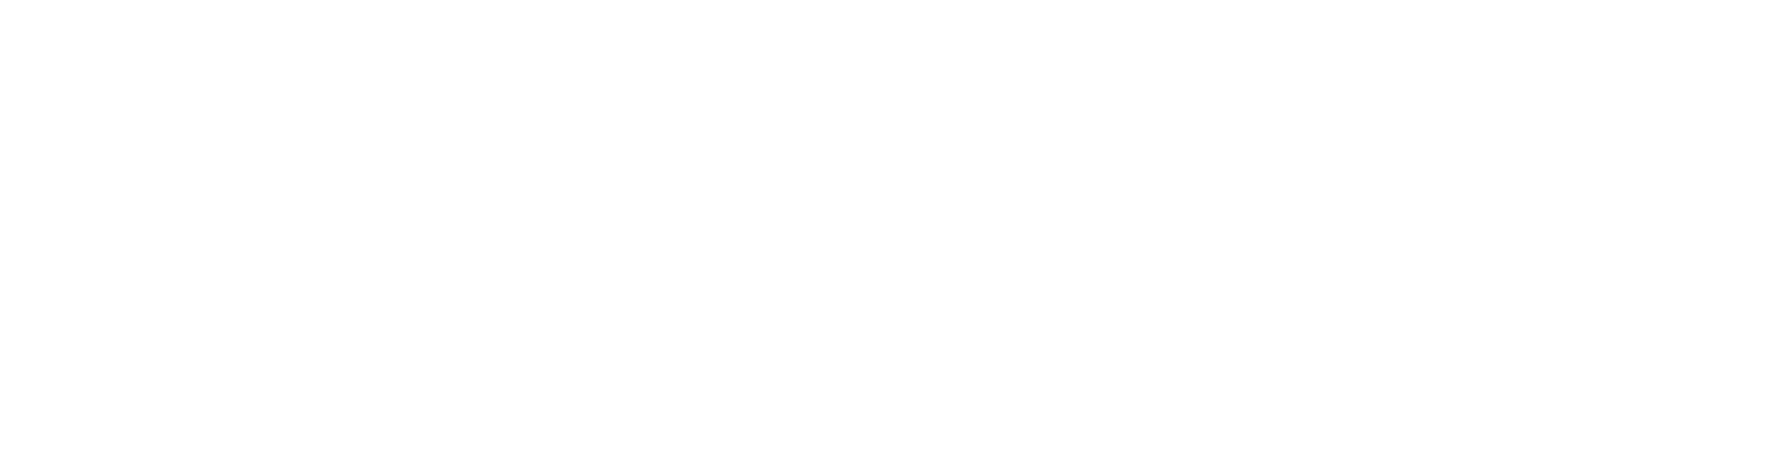 Fish Delish